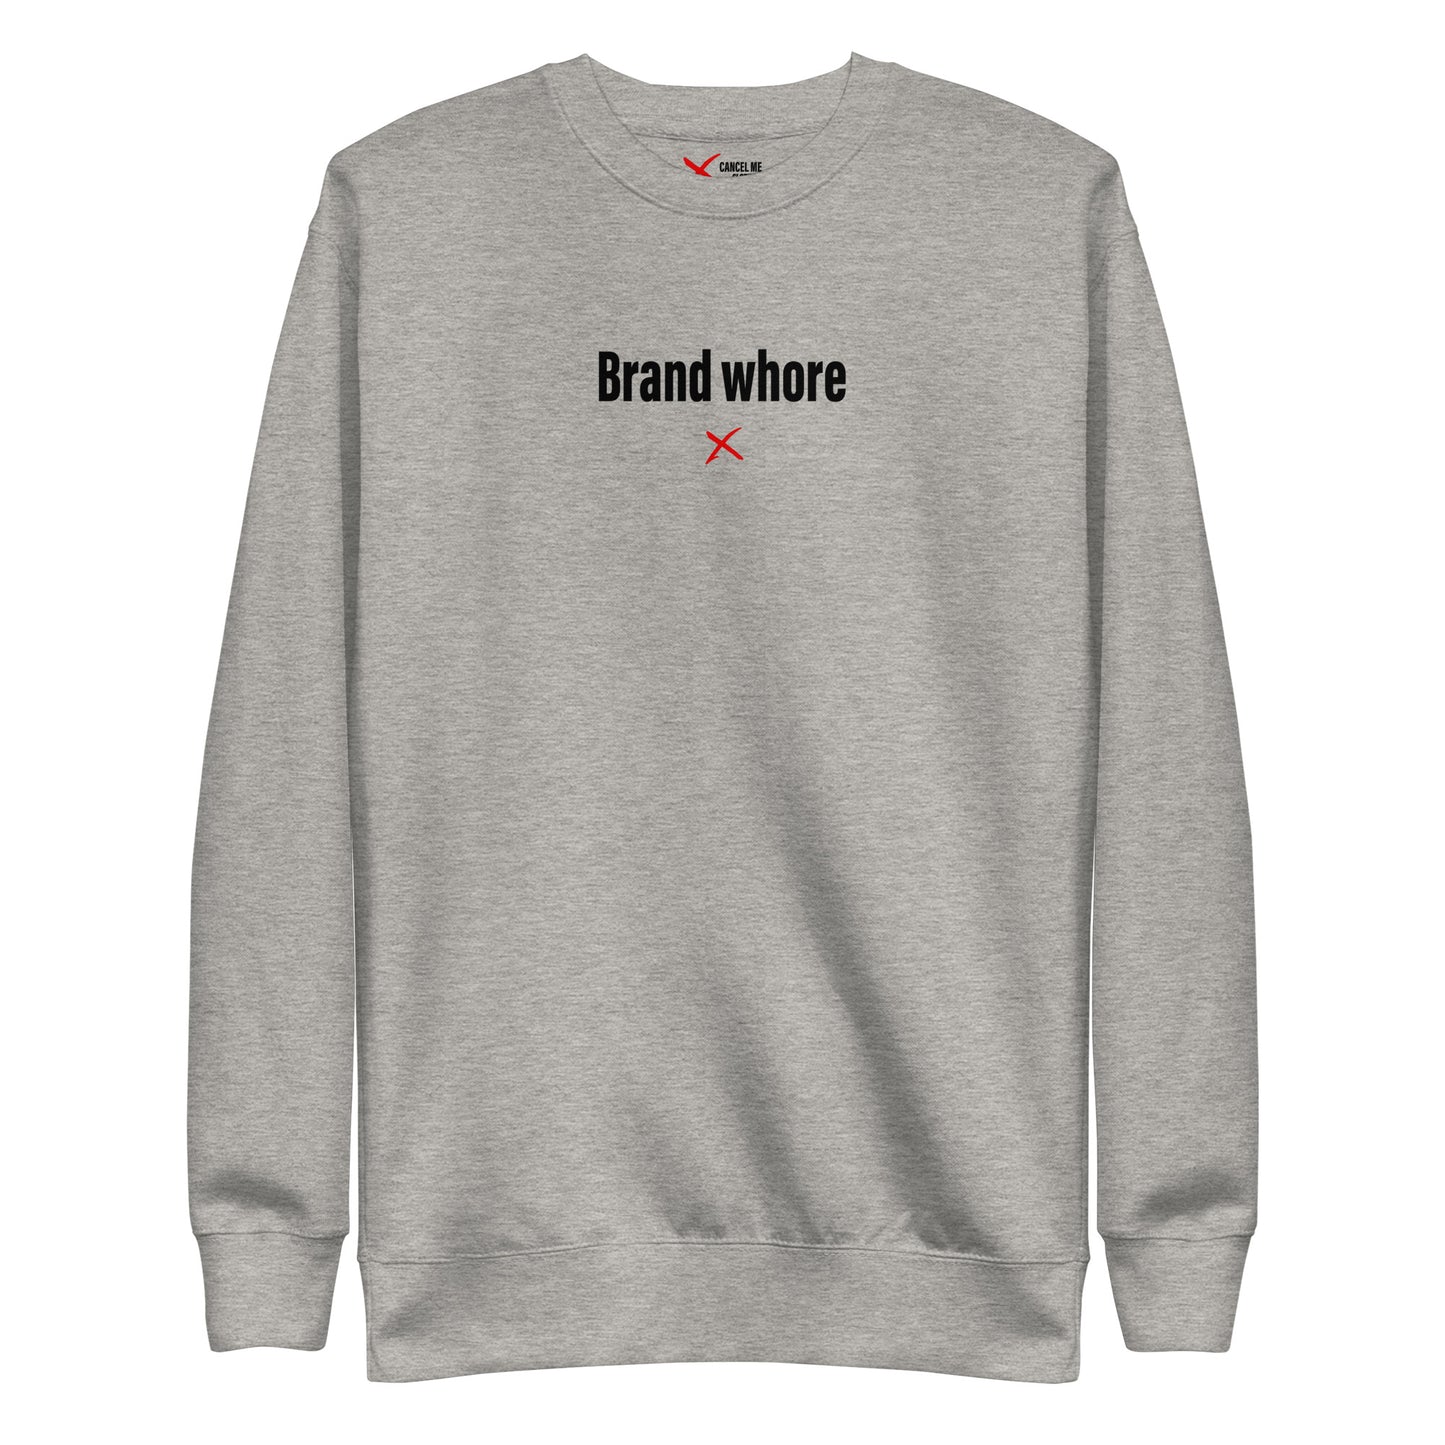 Brand whore - Sweatshirt